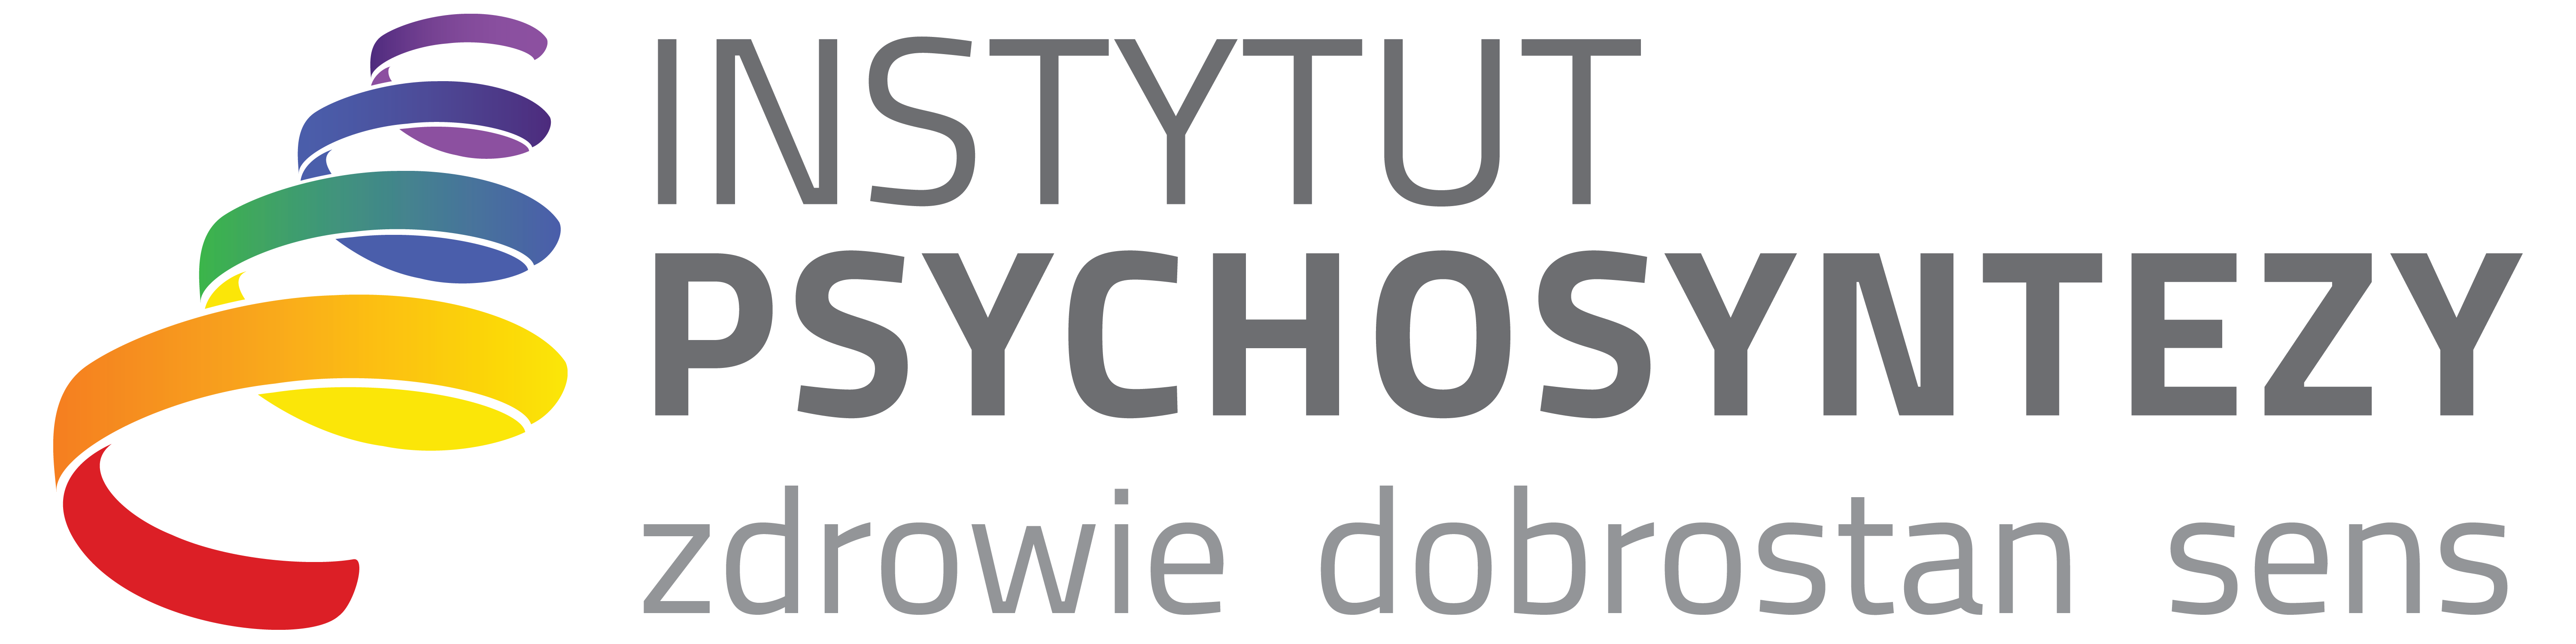 Psychosynteza, psychologia transpersonalna, coaching życiowy, rozwój osobowy - Instytut Psychosyntezy